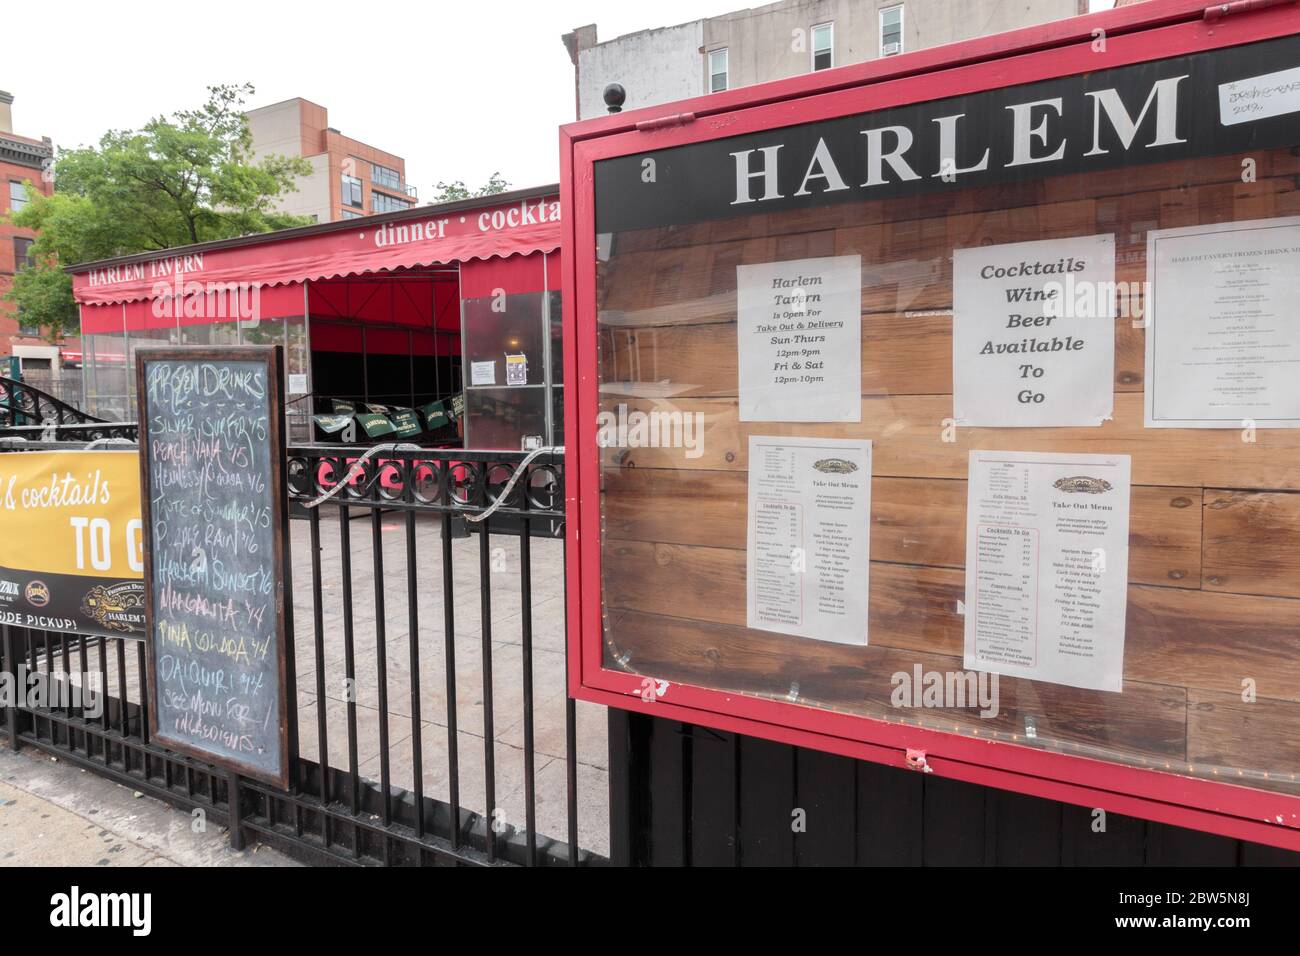 Schilder vor der Harlem Tavern bieten Mitnahme und Lieferung sowie Bier, Wein und Cocktails während der Coronavirus oder Covid-19 Pandemie zu gehen Stockfoto